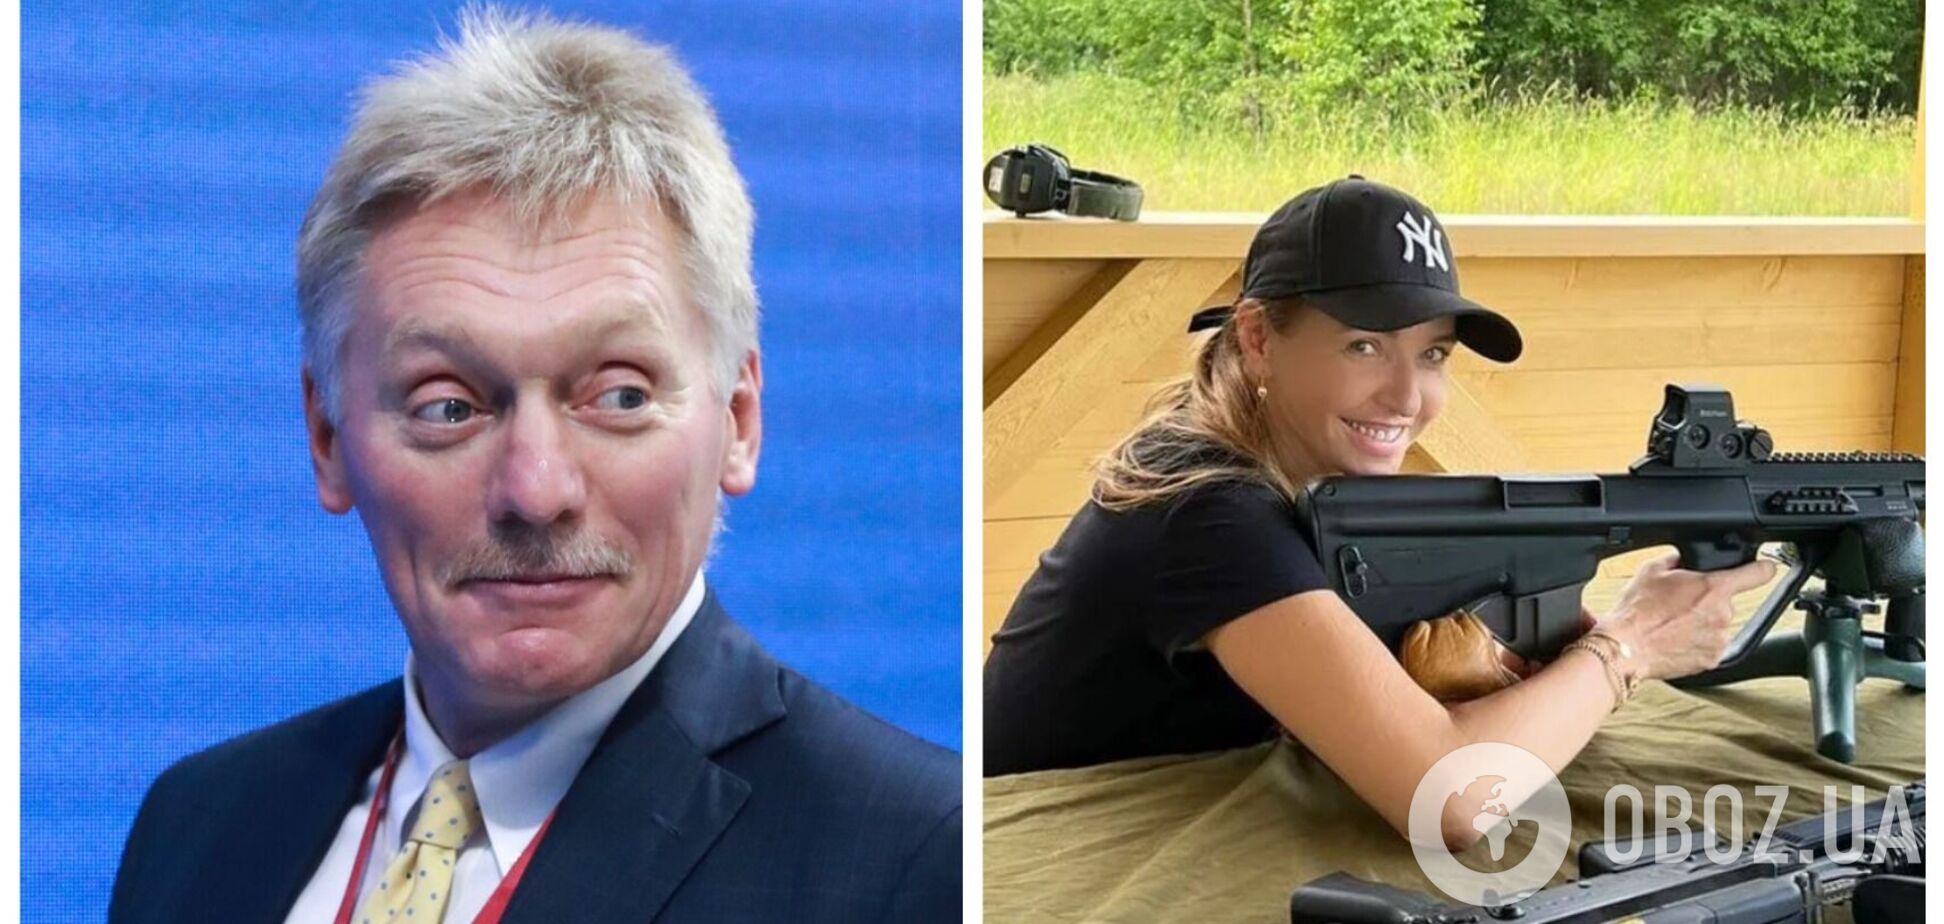 'Правило бумеранга никто не отменял': украинцы напомнили жене Пескова о расплате после фото с оружием